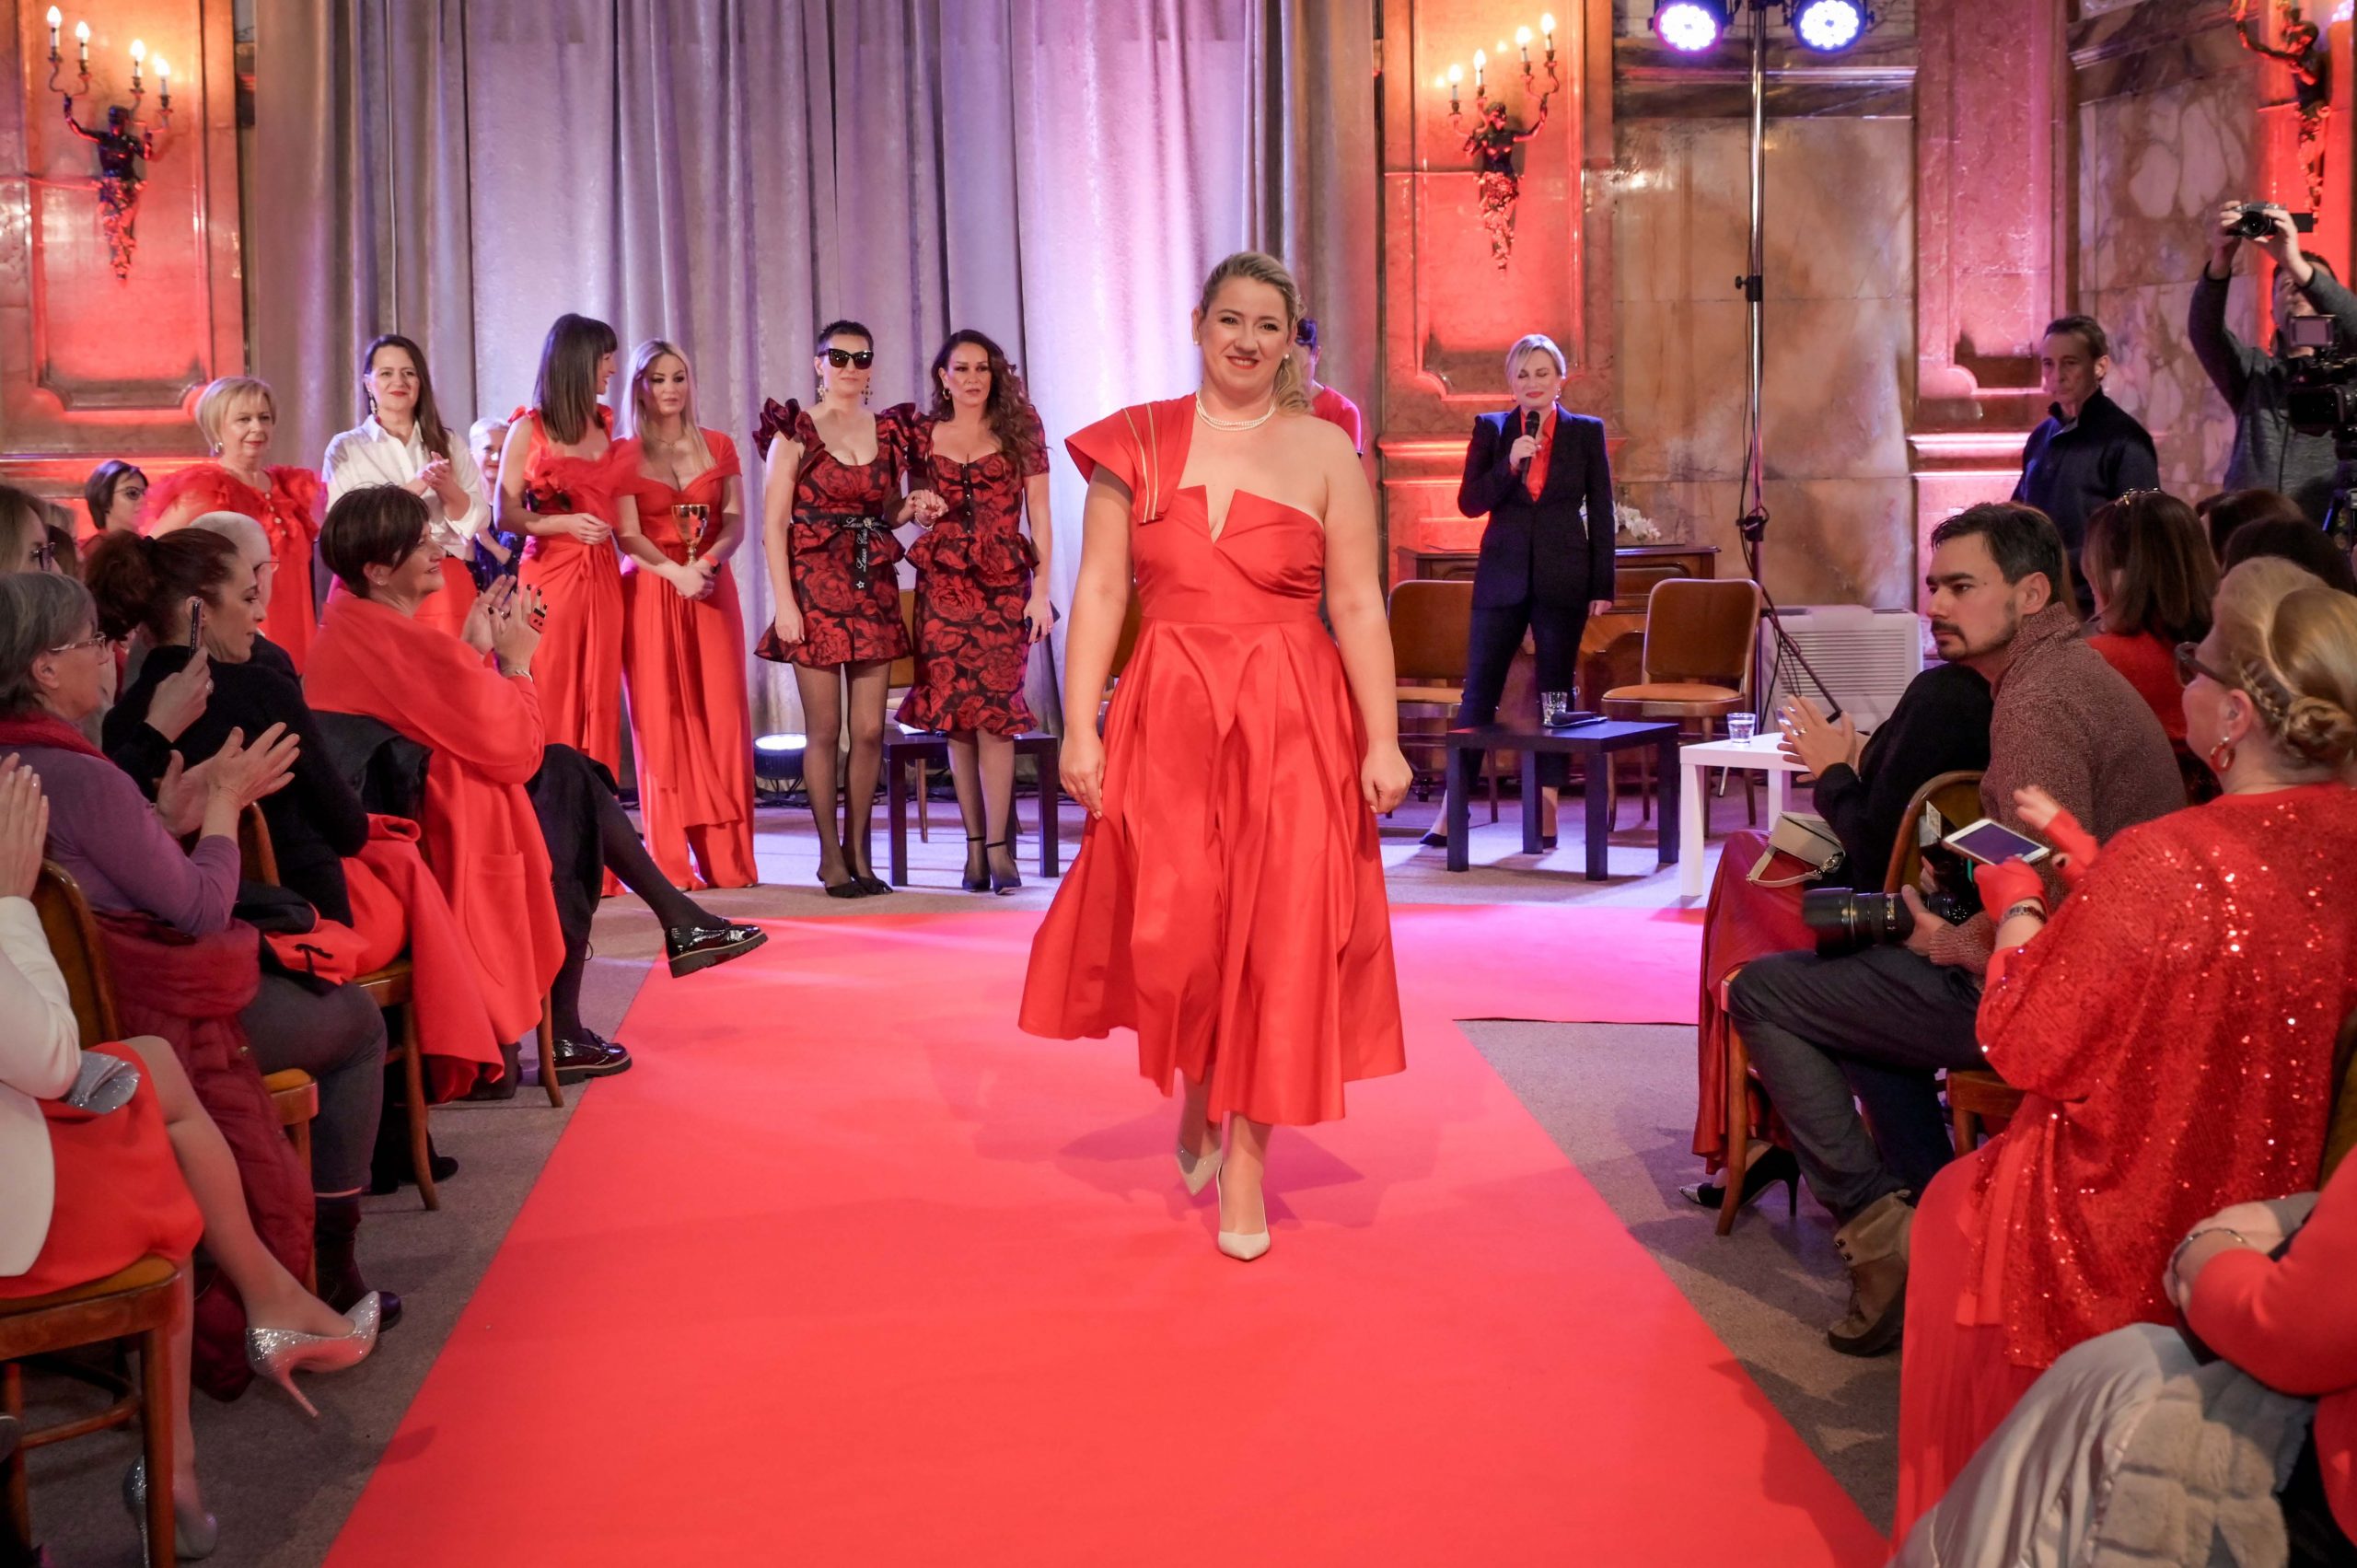 Dan crvenih haljina: Guvernerova palača zablistala u posebnom ruhu